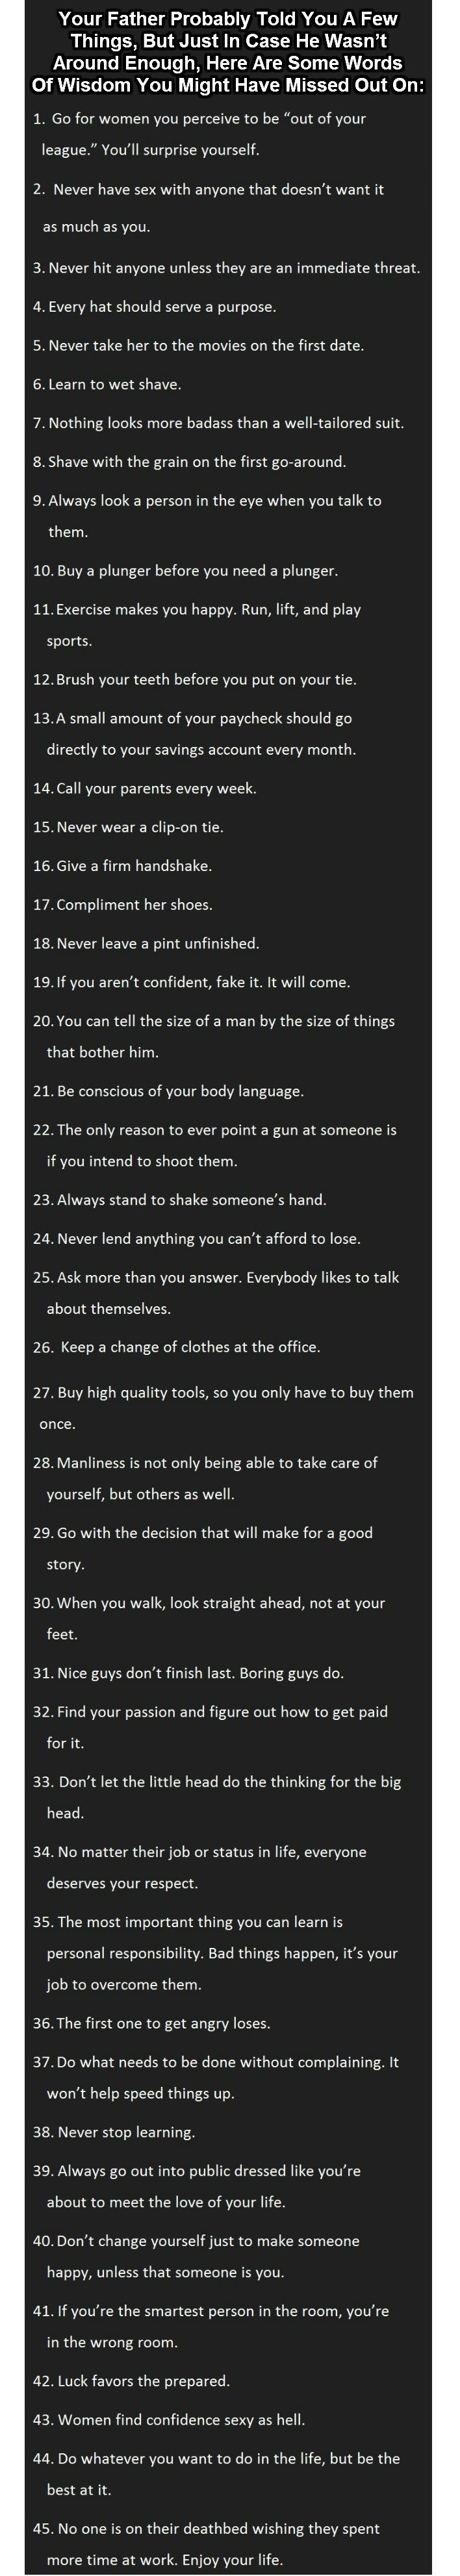 45 ultimate tips for men from men